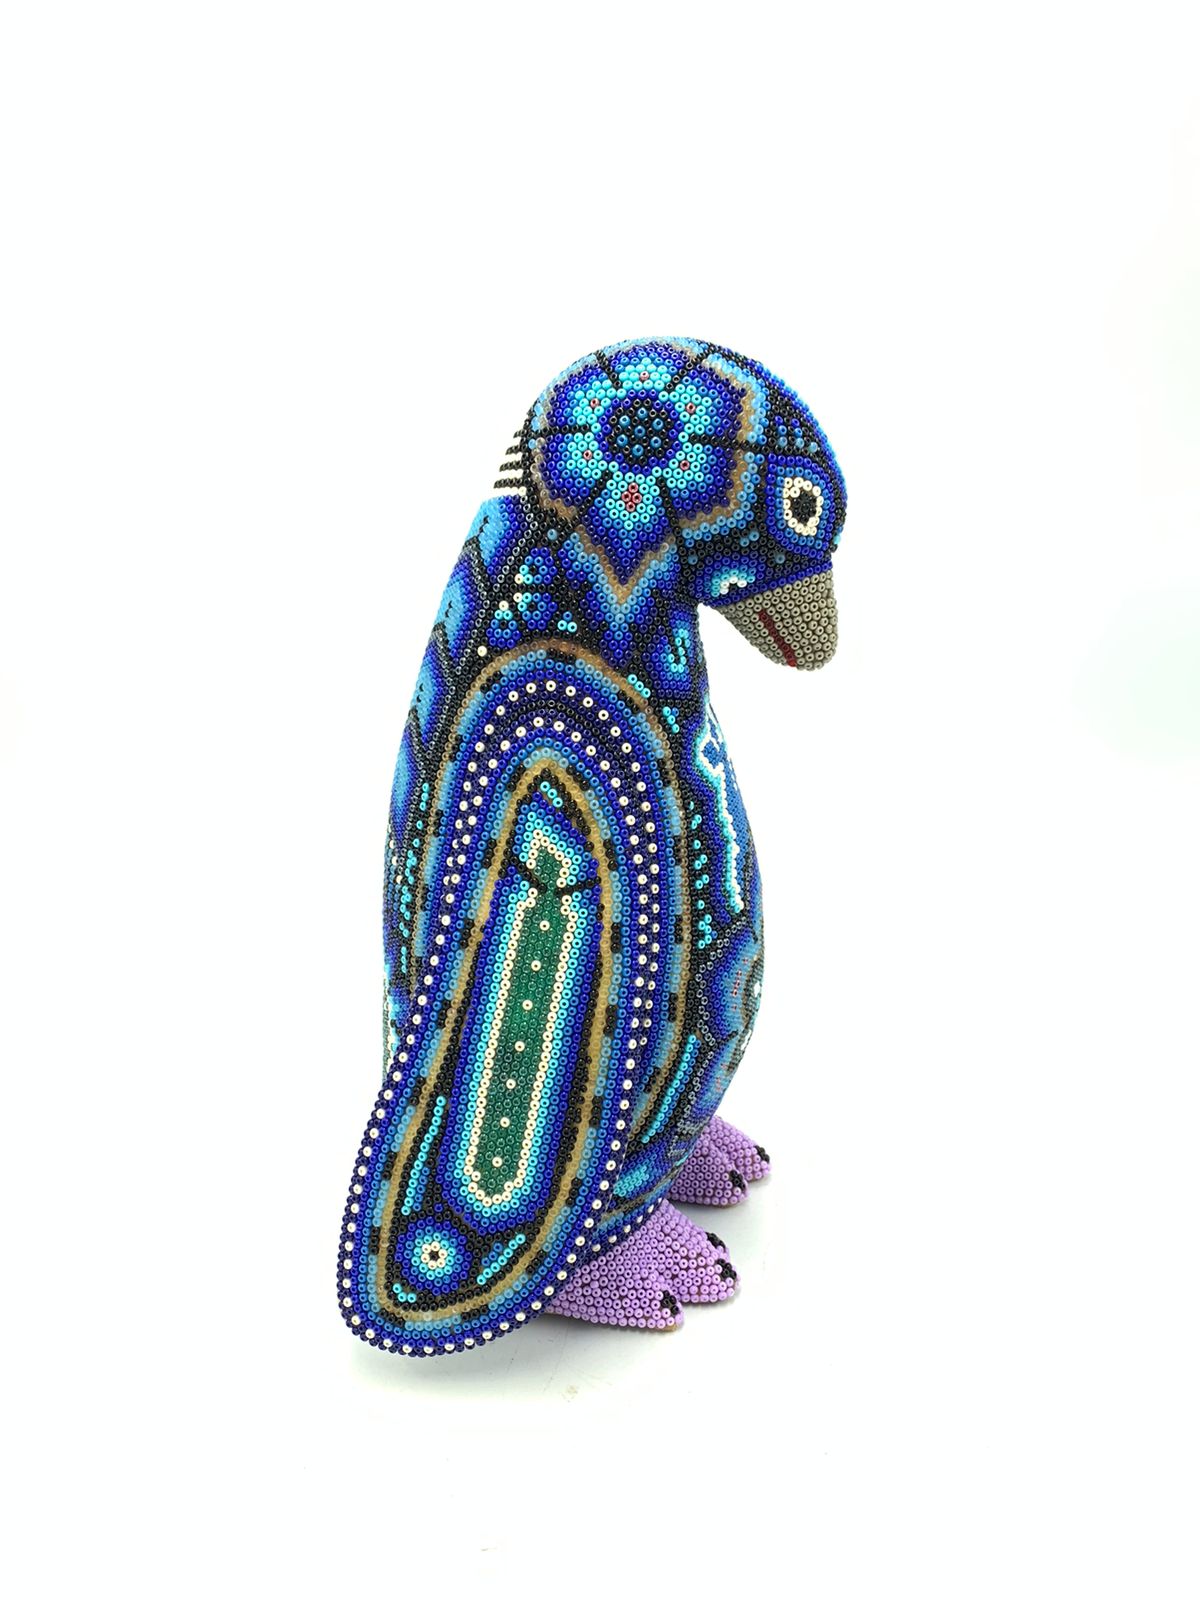 Mexican Folk Art Huichol Beaded Penguin by Isandro Villa Lopez PP5761